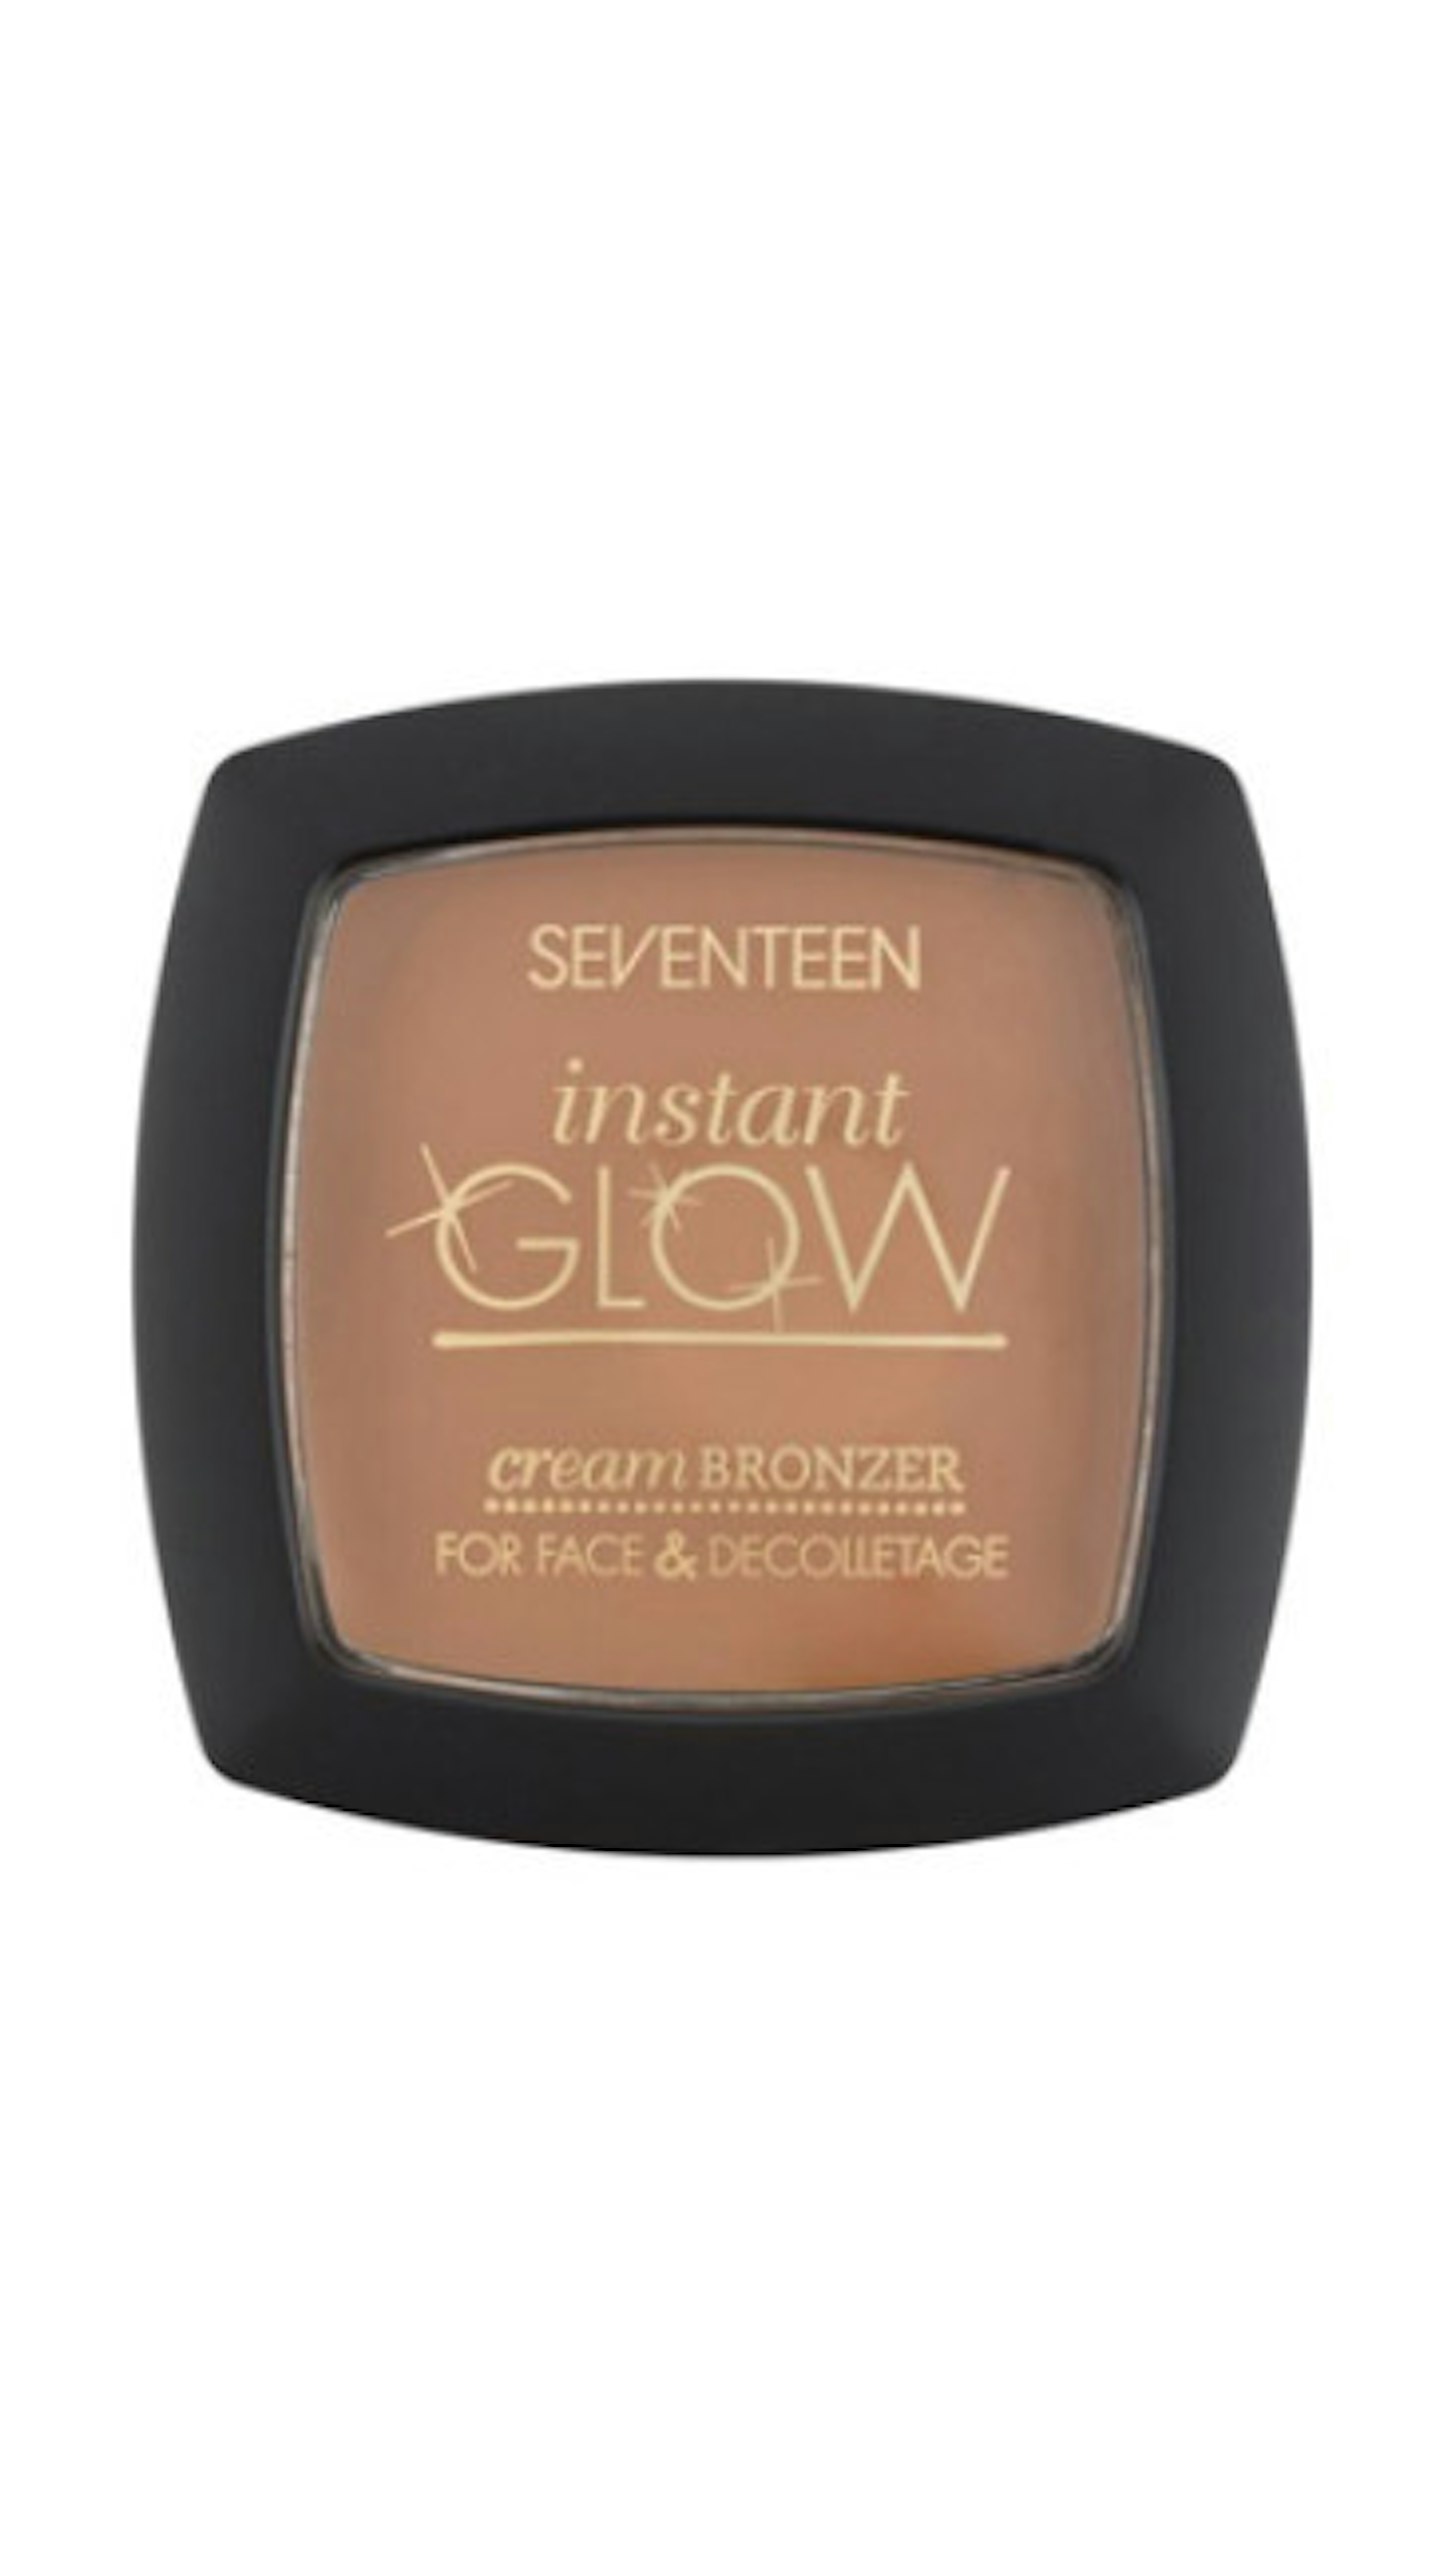 SEVENTEEN Instant Glow Tan Cream Bronzer